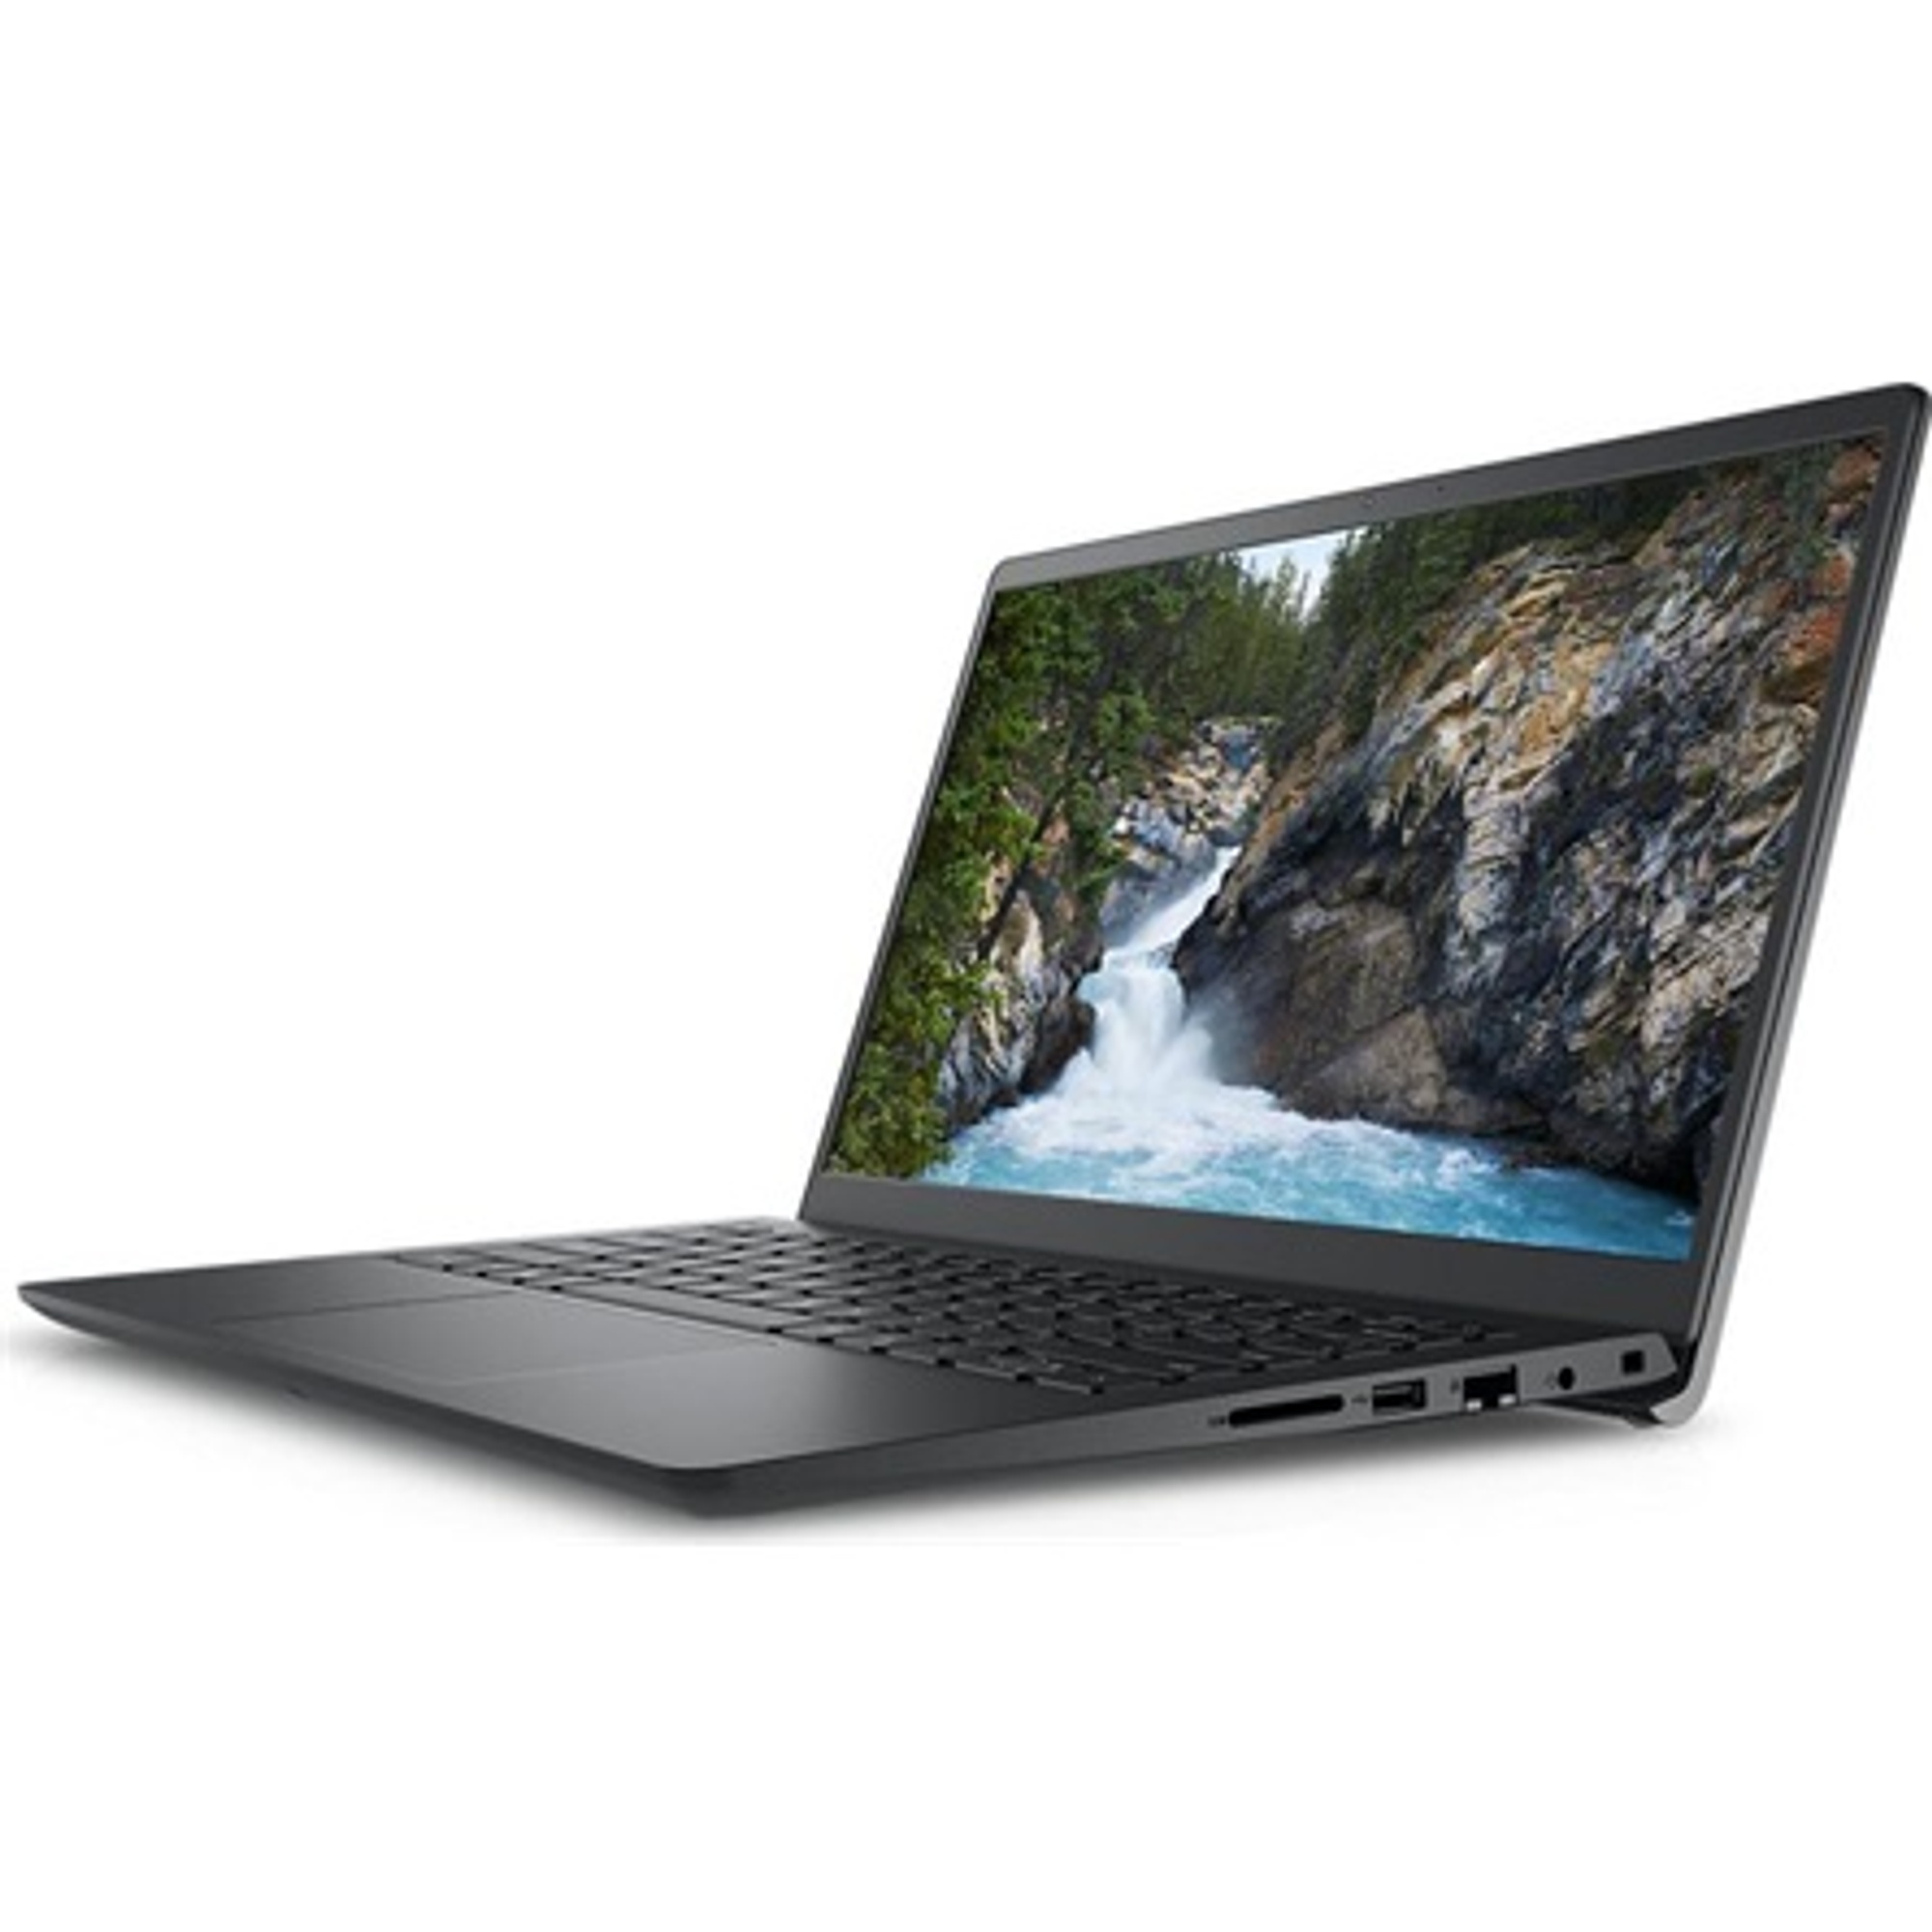 DELL V3420-13 Laptop / Notebook 2